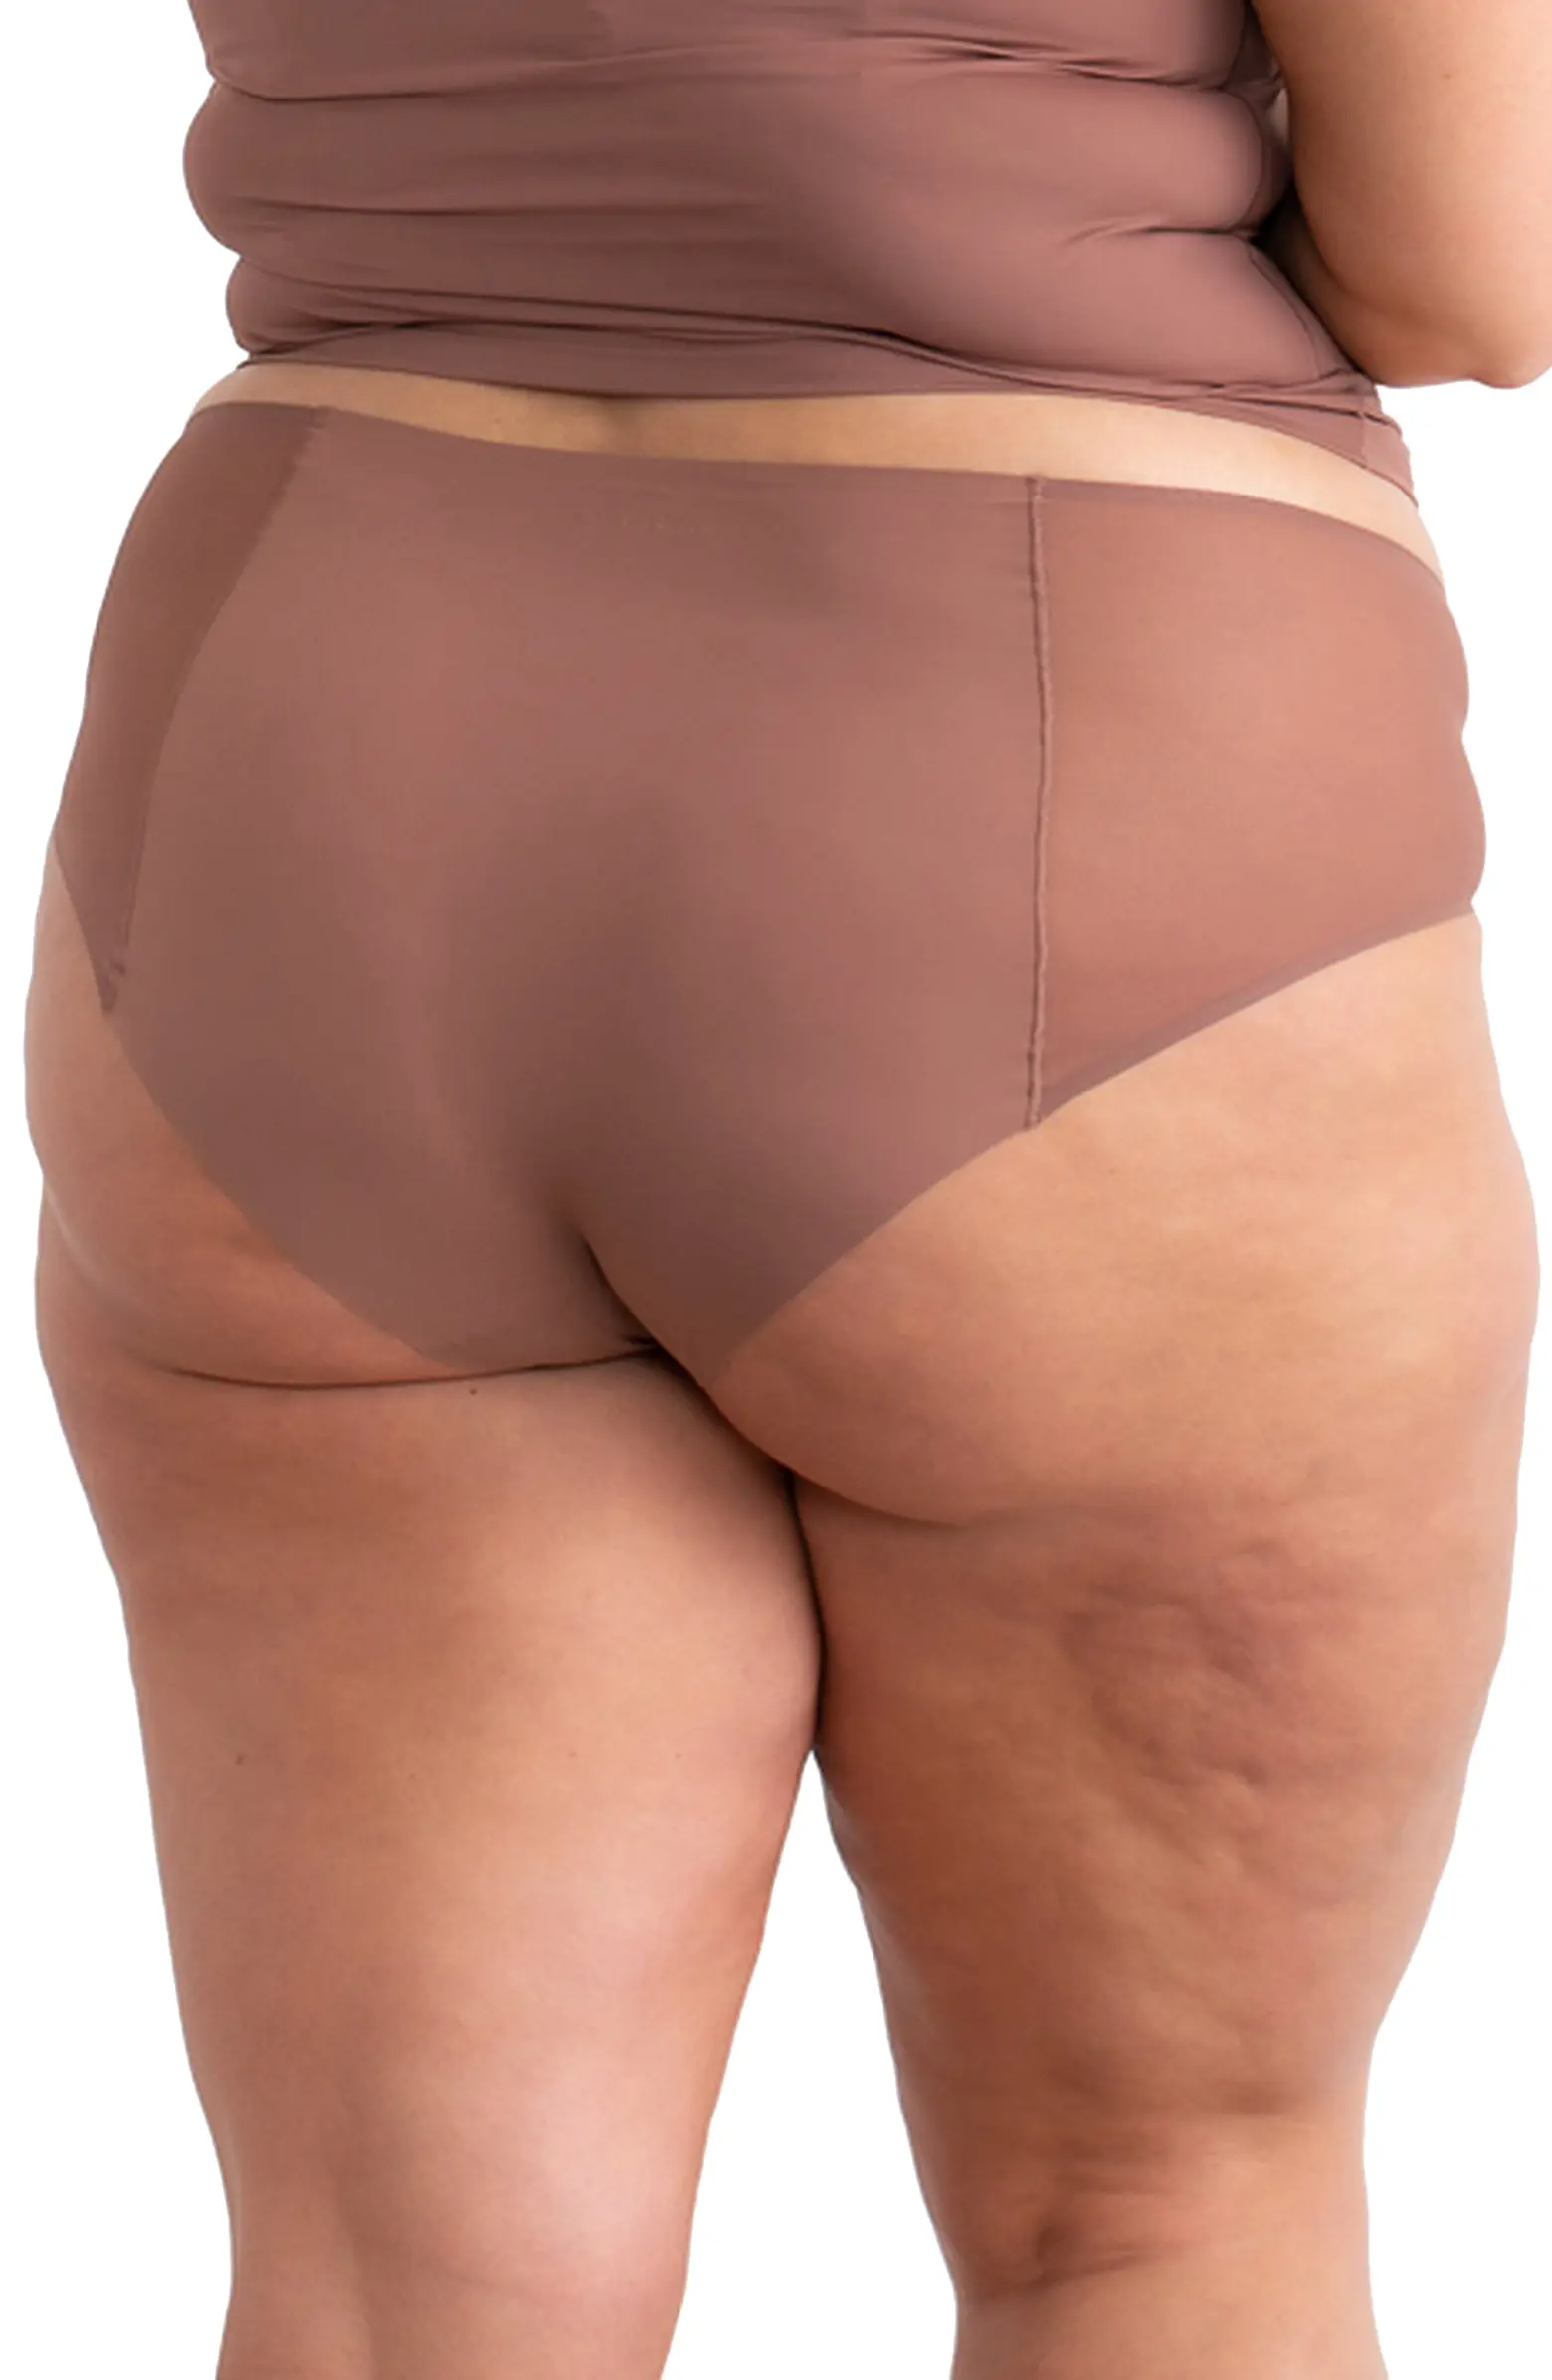 Best Deal for lnmuld Women'S Panties Women Sports Fitness Underwear Sexy